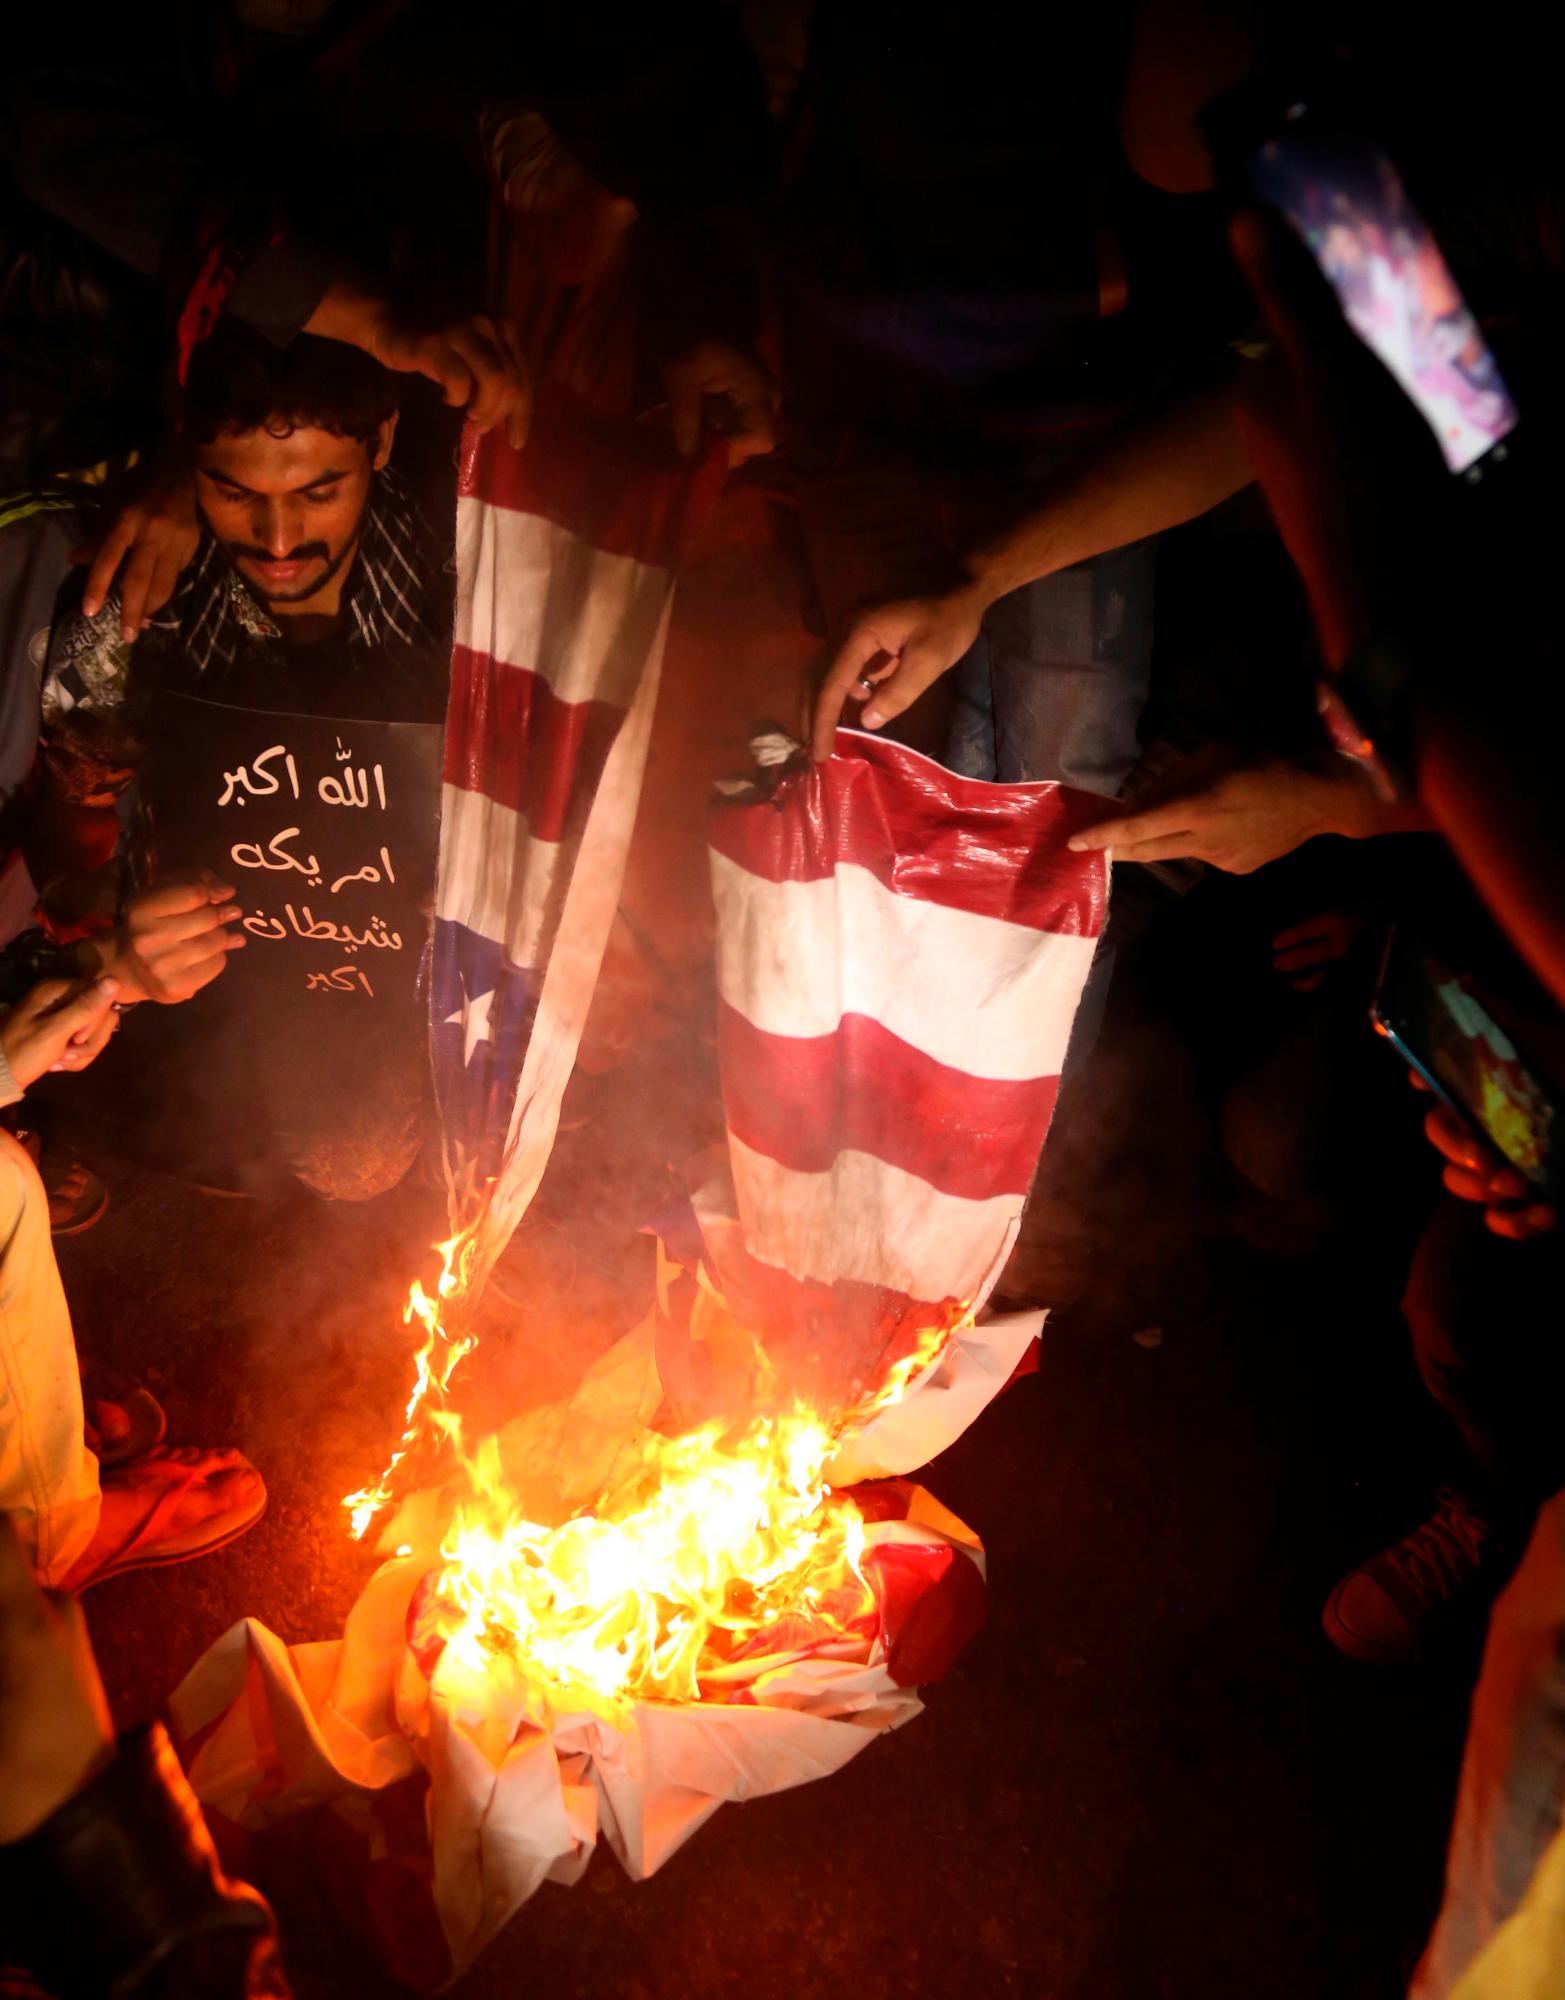 Los musulmanes chiítas paquistaníes queman un simulacro de bandera estadounidense mientras sostienen imágenes del general Qasem Soleimani, jefe de la élite de la Fuerza Quds de la Guardia Revolucionaria Islámica de Irán, durante una protesta contra Estados Unidos en Karachi, Pakistán, el 5 de enero de 2020. El general Qasem Soleimani, murió en un ataque aéreo el 03 de enero, en Bagdad, ordenado por el presidente de los Estados Unidos, dijo el Pentágono. El general Soleimani estaba a cargo de la estrategia de política exterior de Irán como jefe de la Fuerza Quds, un ala de élite del Cuerpo de la Guardia Revolucionaria Islámica, que Estados Unidos designó como organización terrorista. La Fuerza Quds domina sobre una serie de milicias chiítas en toda la región, desde el Líbano hasta Siria e Irak.